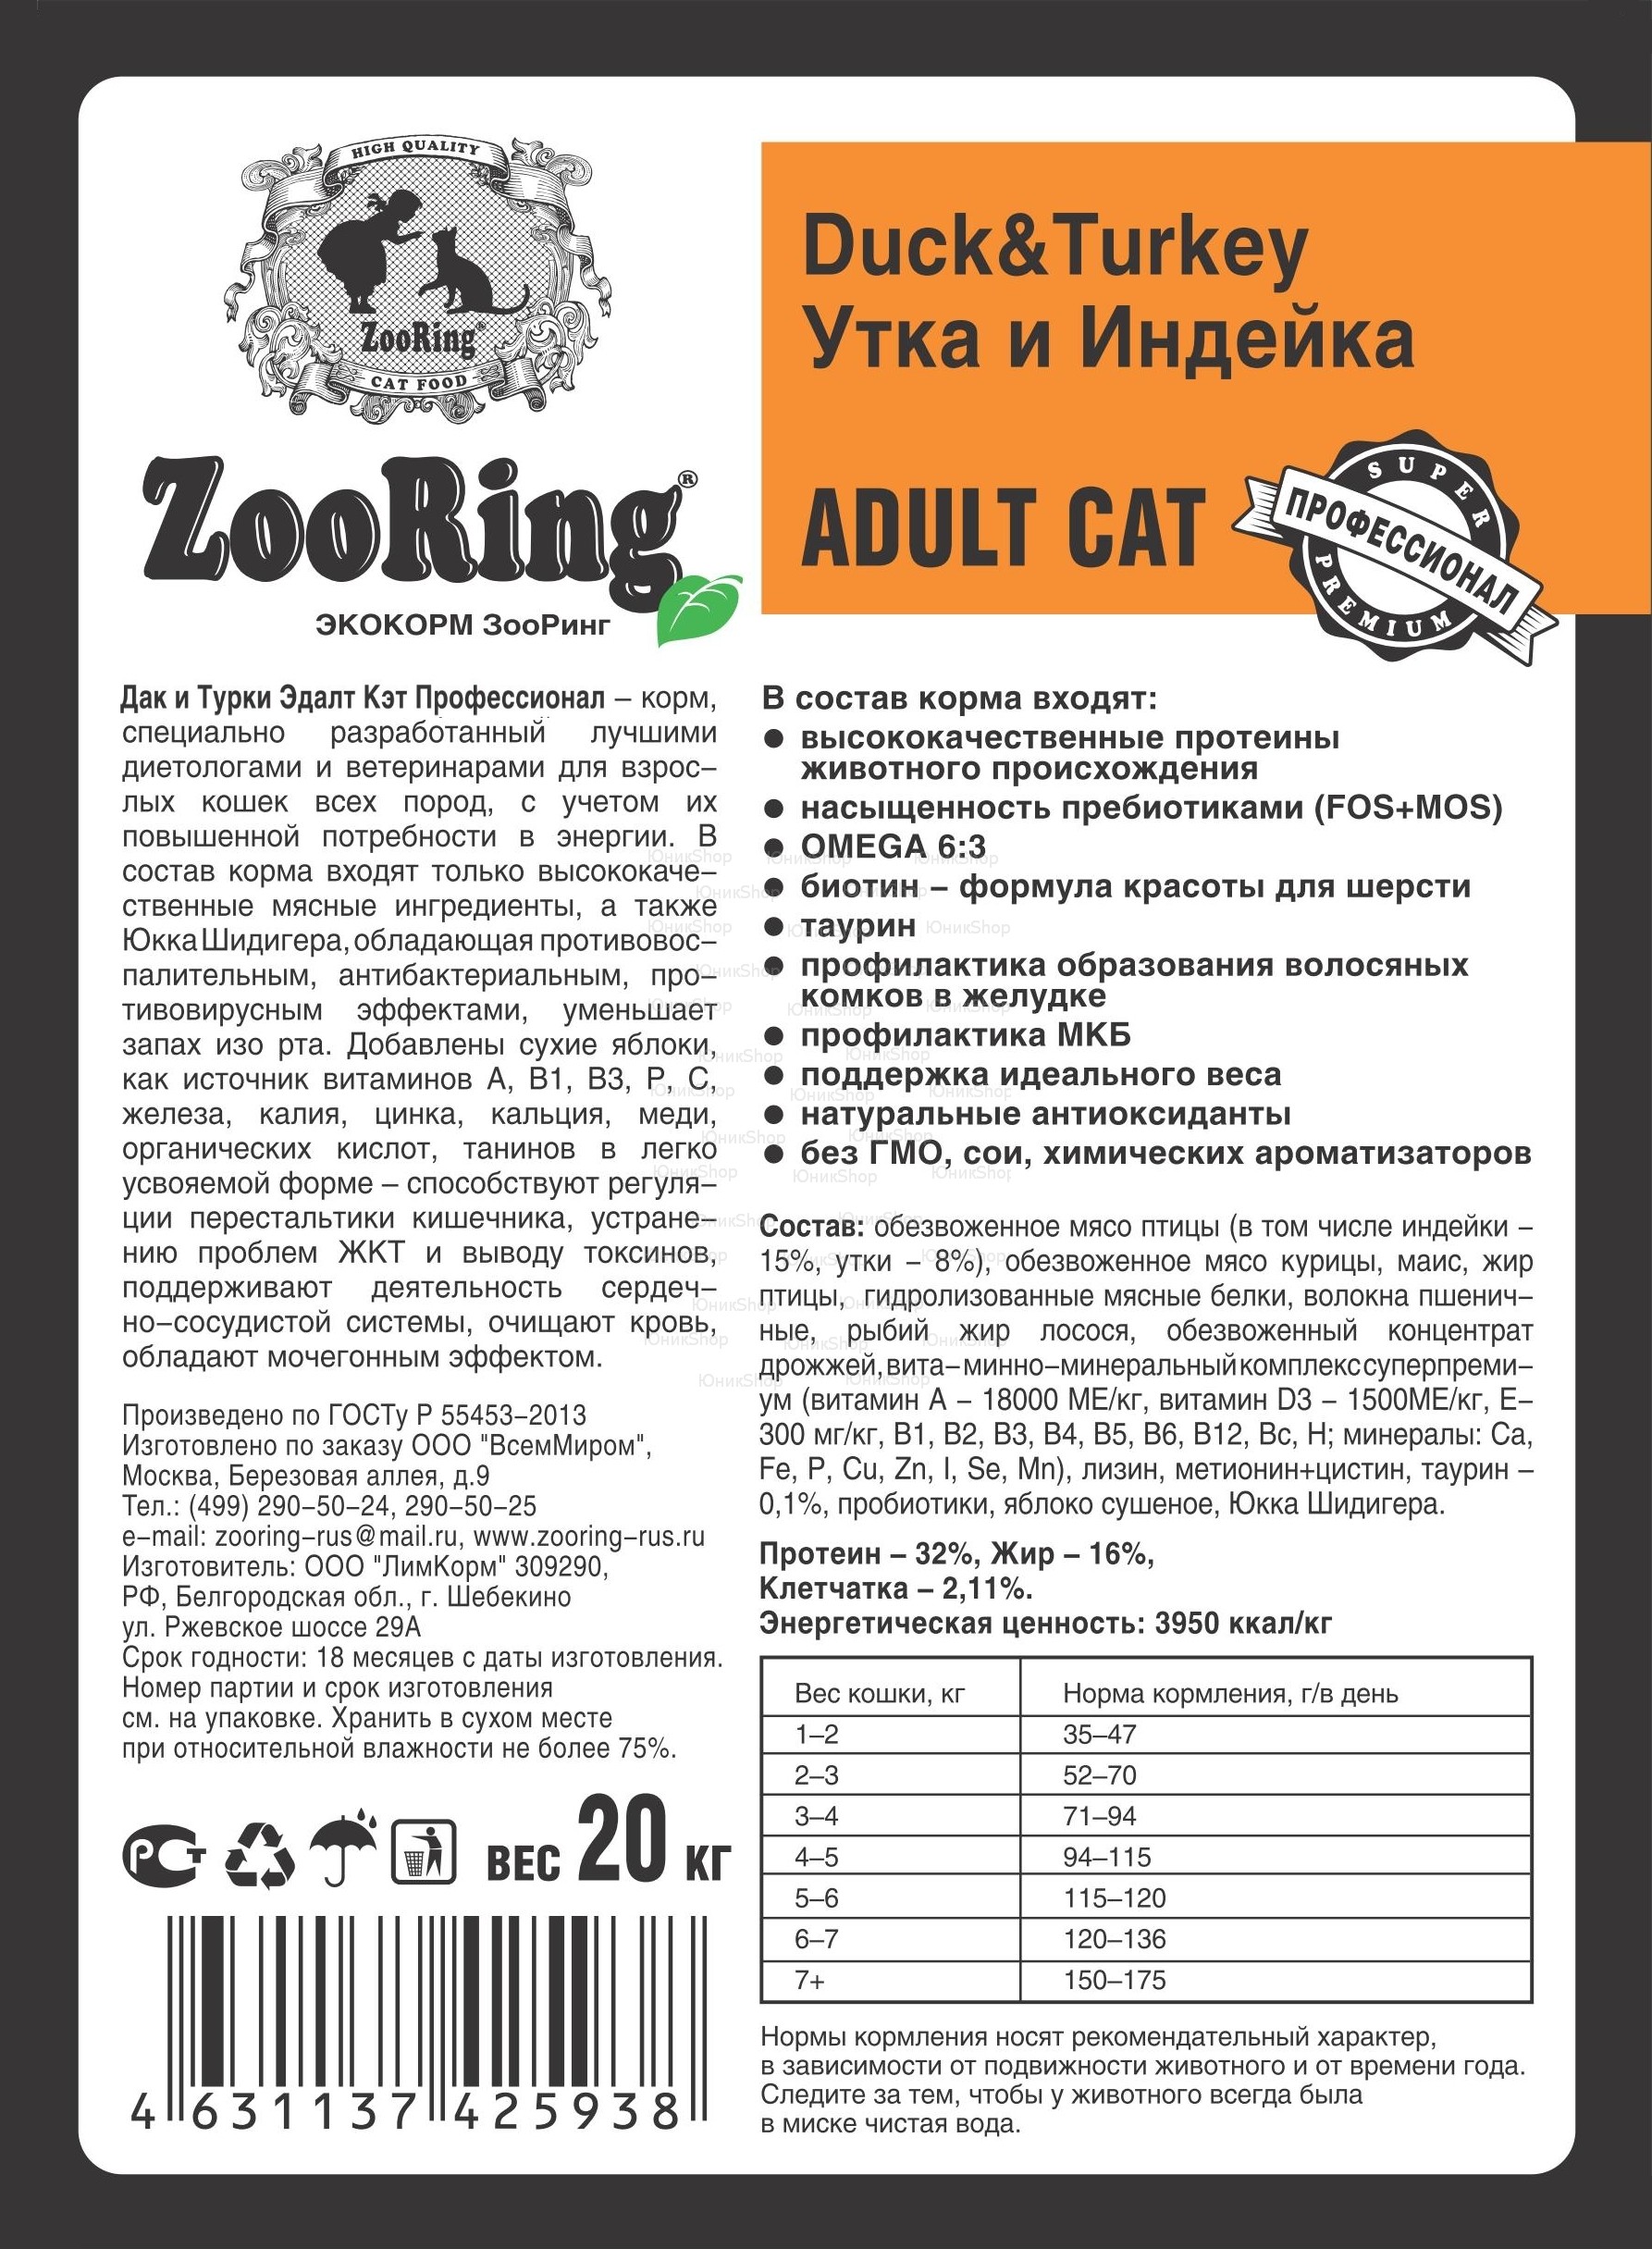 Корм ZooRing Adult Cat Утка и Индейка 20кг